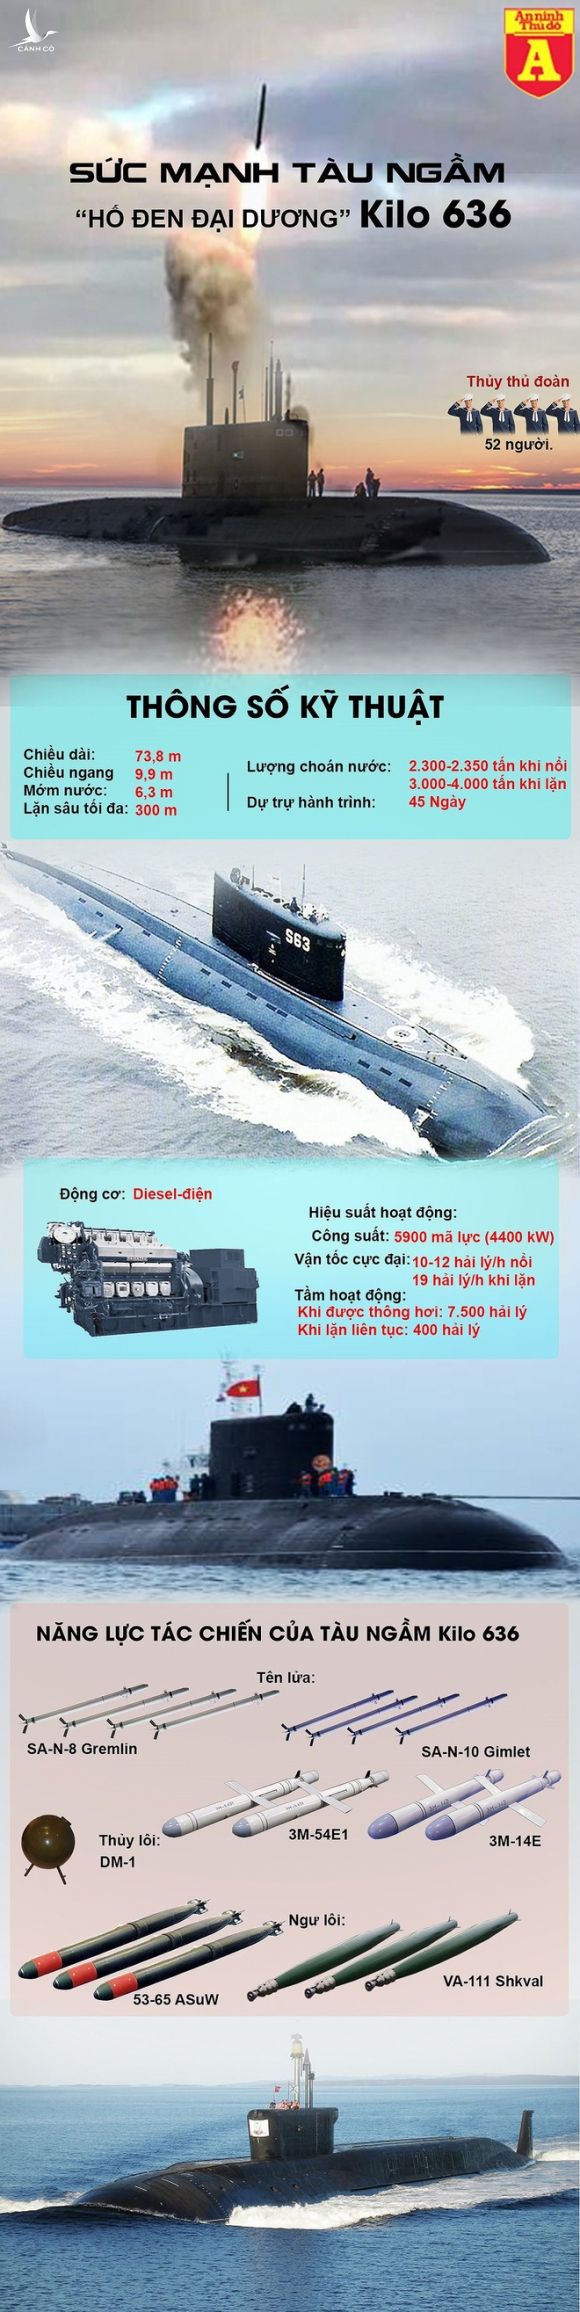 Tàu ngầm Kilo 636 mạnh cỡ nào mà khiến các nước phát thèm? - Ảnh 2.